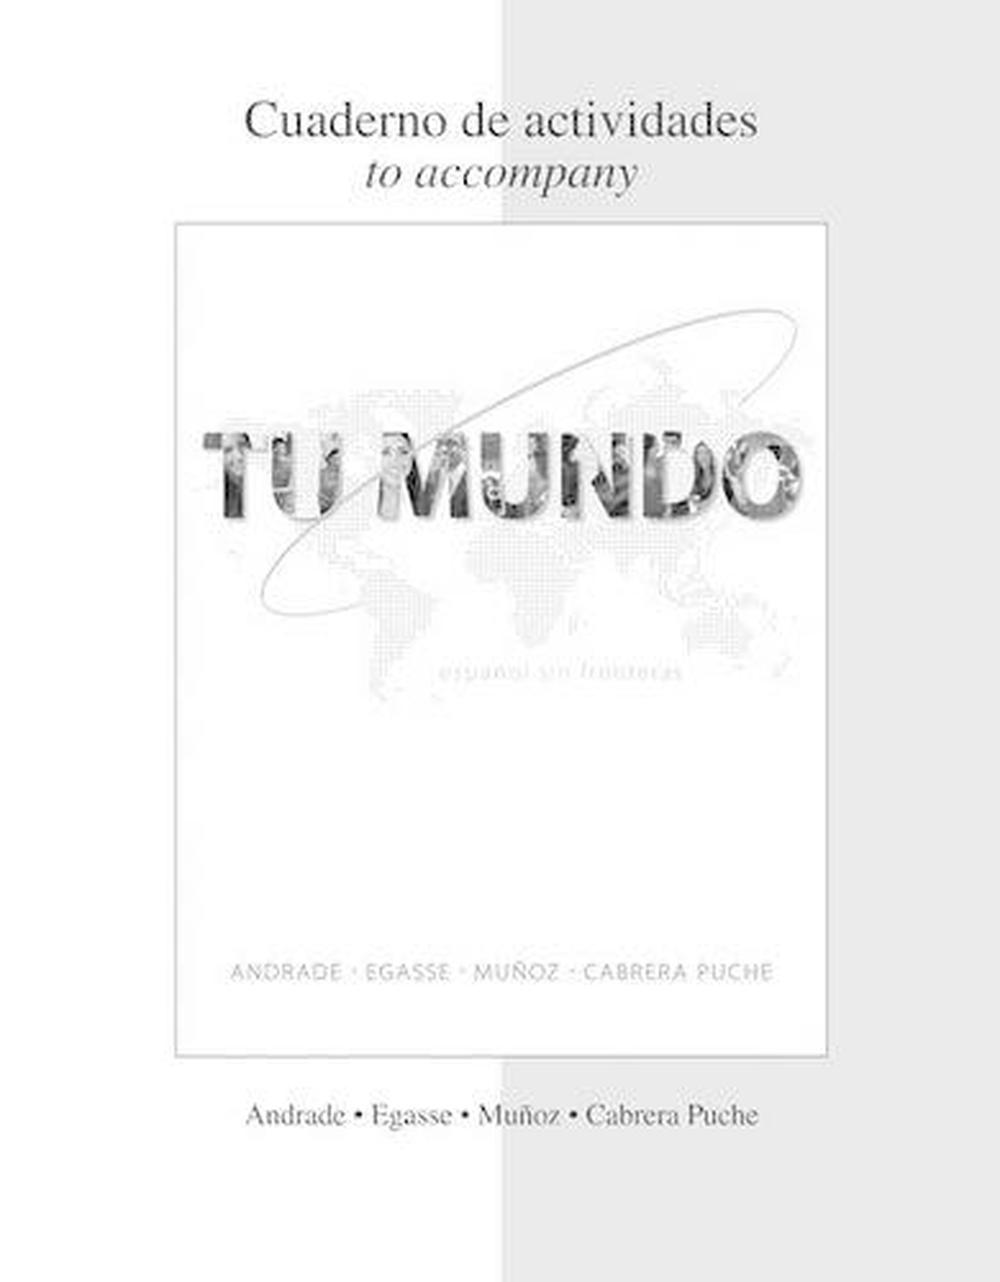 Tu Mundo Espanol Sin Fronteras [With Cuaderno de Actividades] by